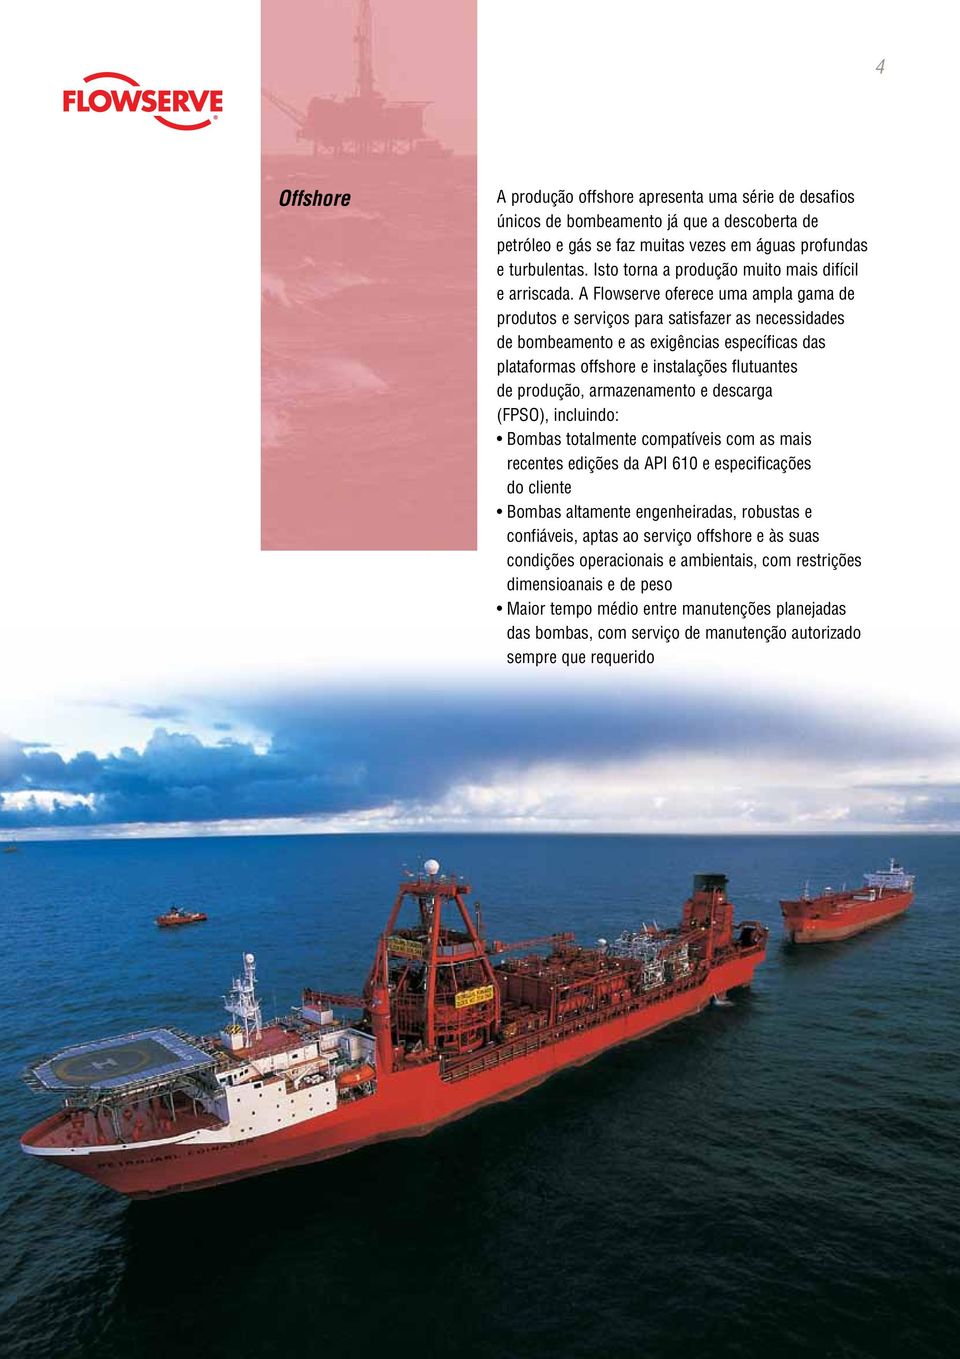 A Flowserve oferece uma ampla gama de produtos e serviços para satisfazer as necessidades de bombeamento e as exigências específicas das plataformas offshore e instalações flutuantes de produção,